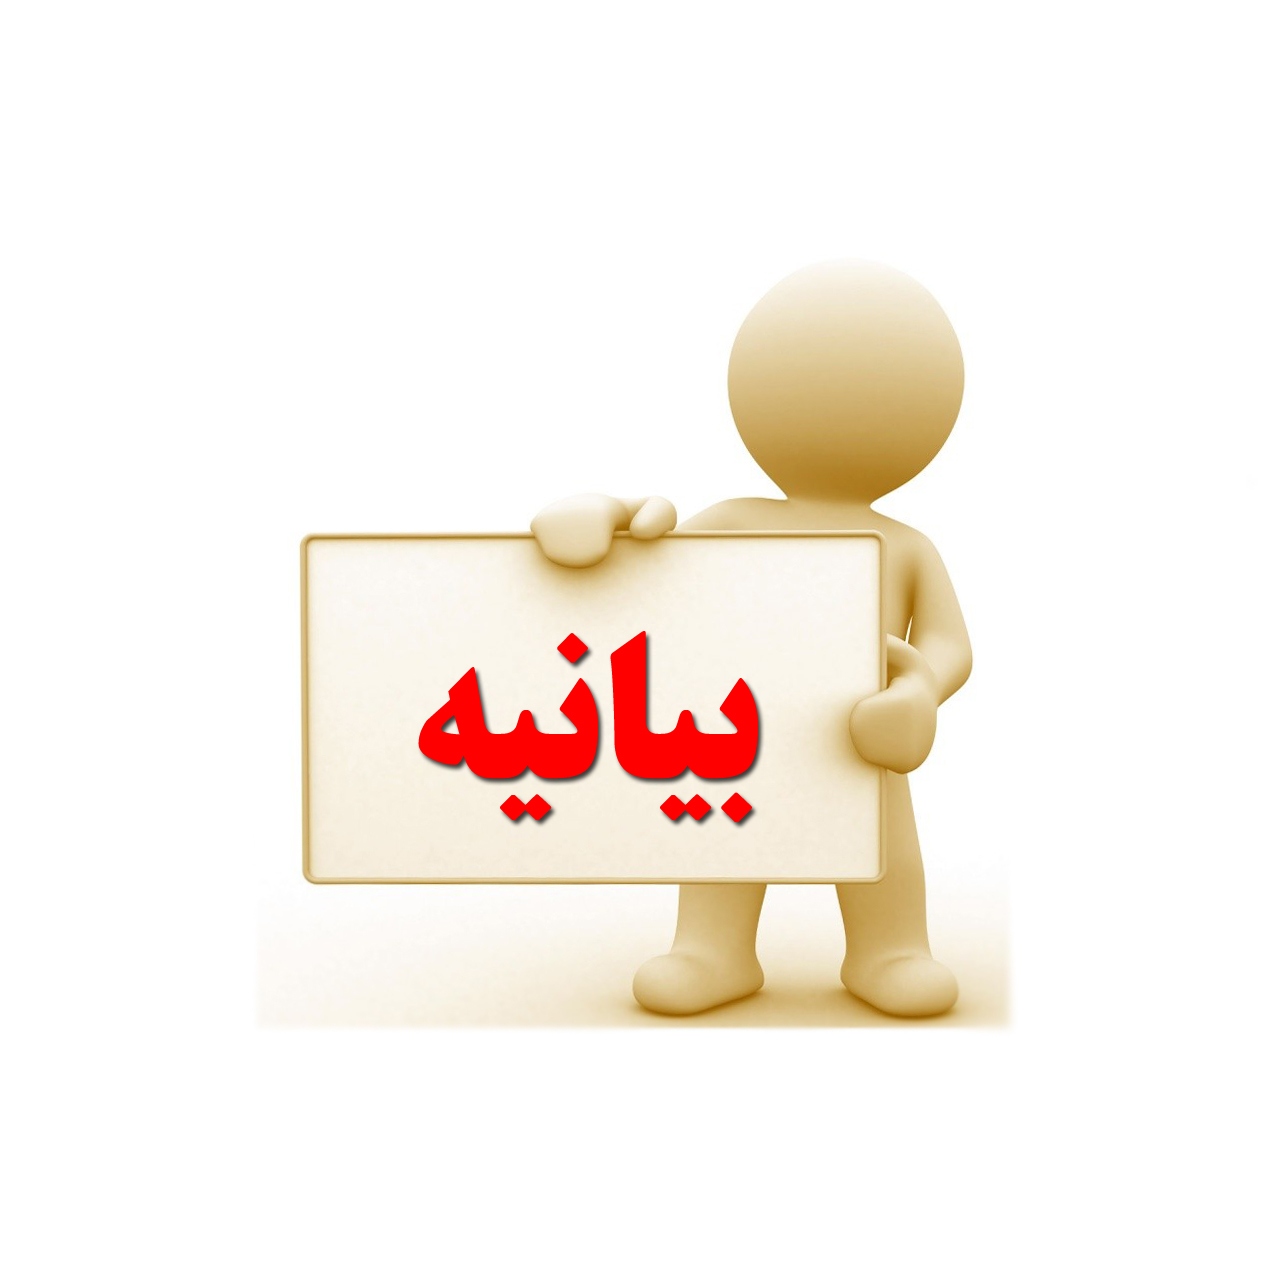 بیانیه مدیریت حج و زیارت استان گیلان در خصوص بزرگداشت یوم الله 22 بهمن